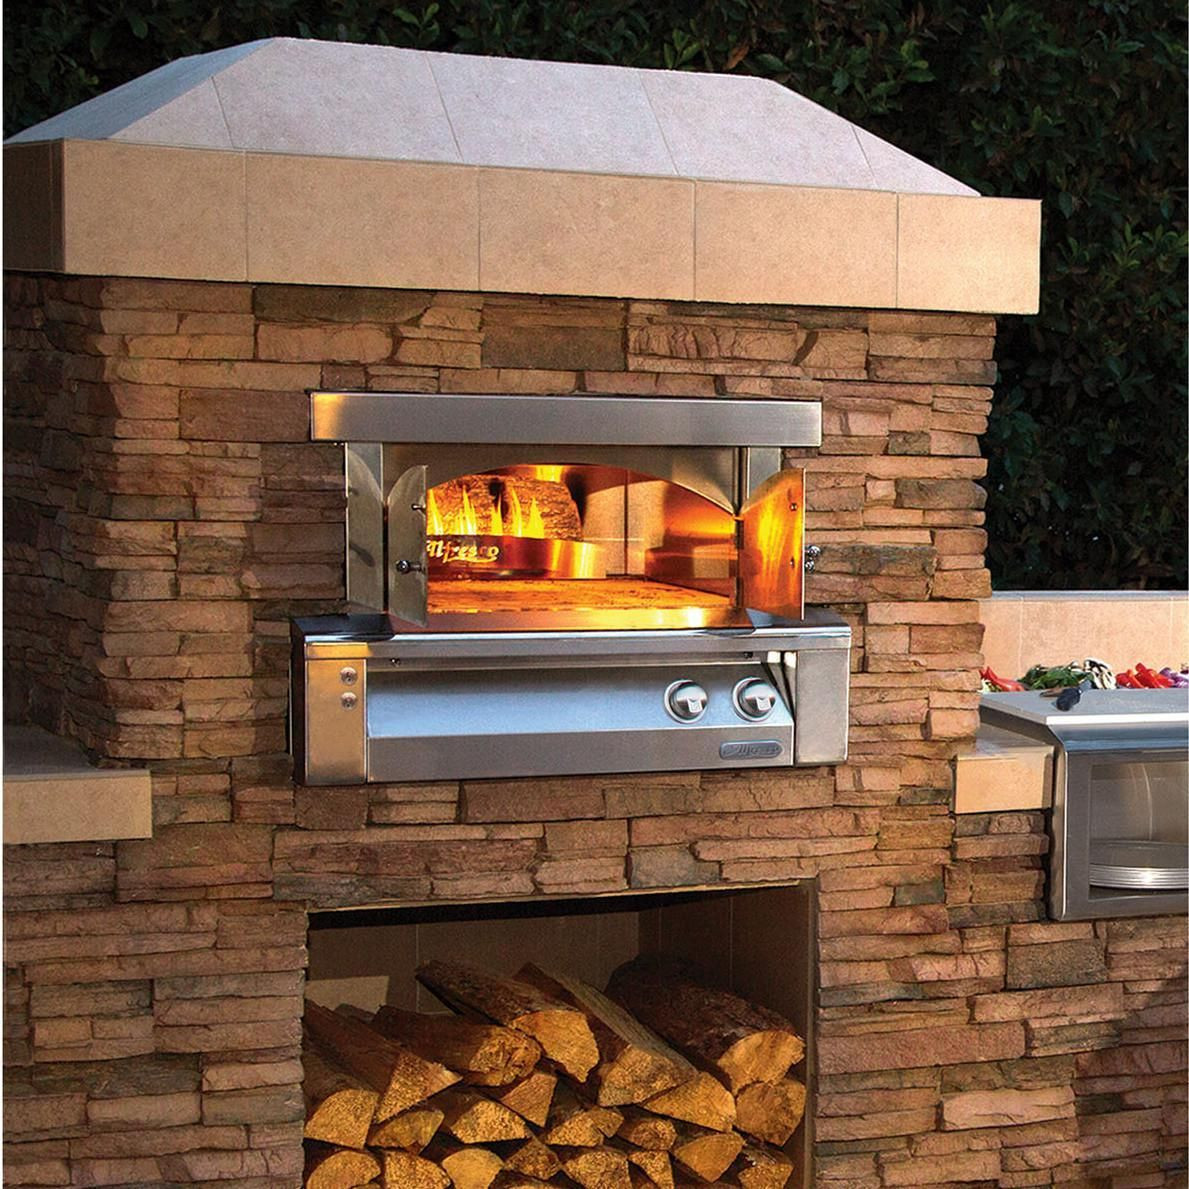 Bbq Guys Outdoor Kitchen
 Alfresco 30" Built In Propane Outdoor Pizza Oven Plus